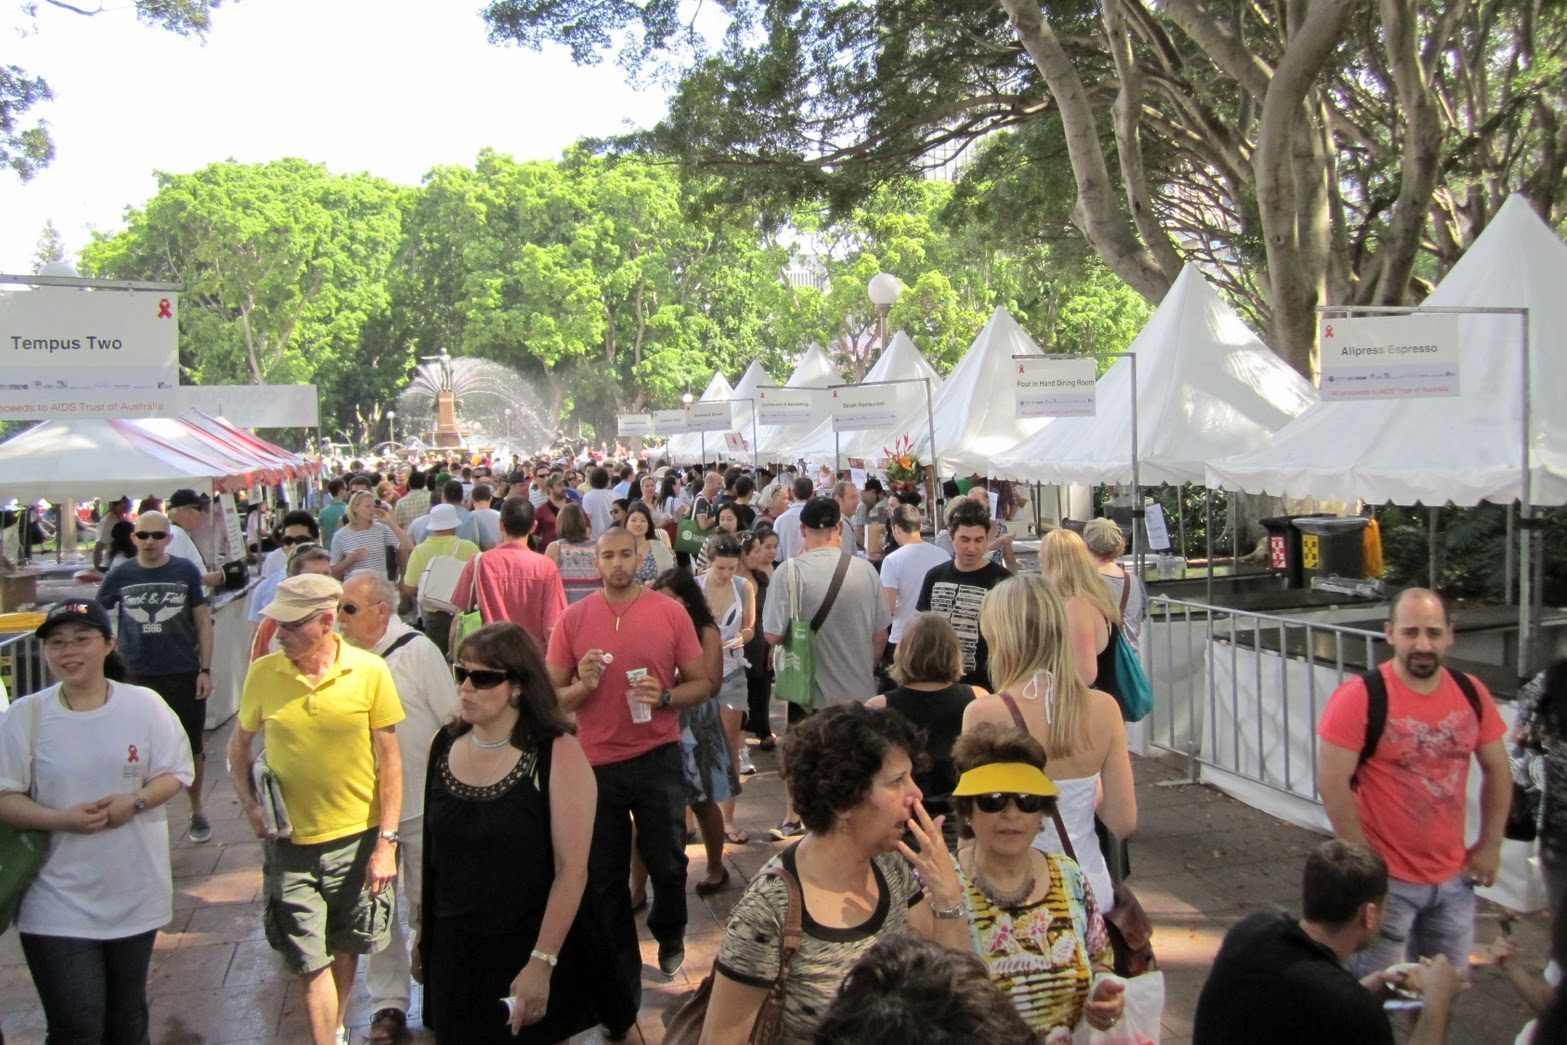 The Sydney Food and Wine Fair